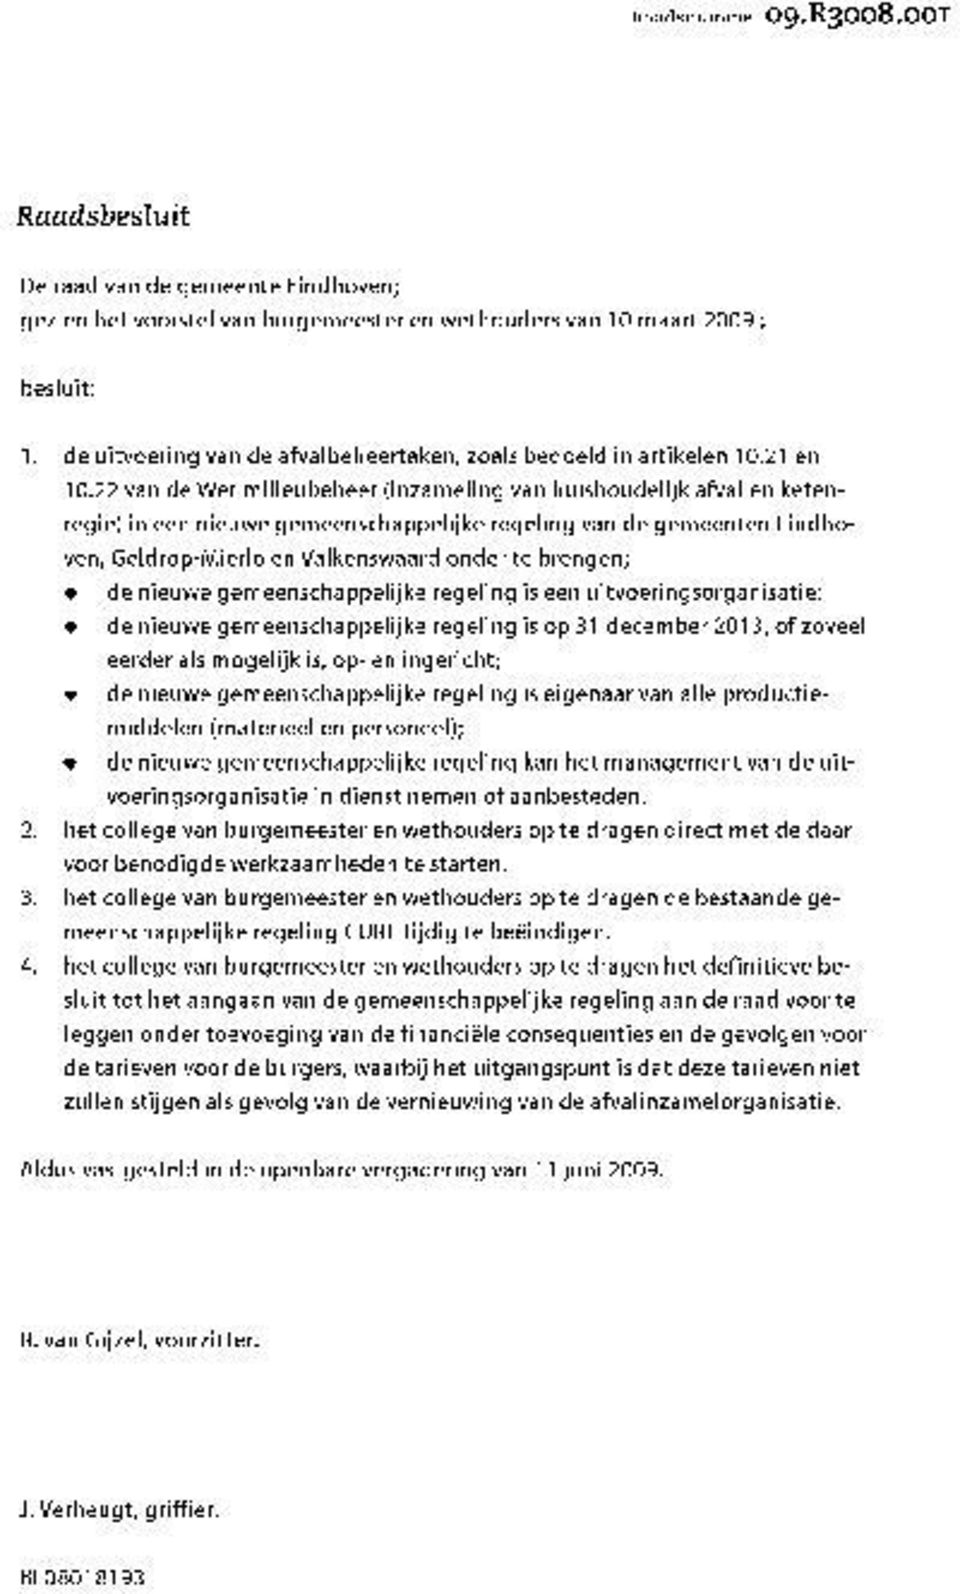 22 van de Wet milieubeheer (inzameling van huishoudelijk afval en ketenregie) in een nieuwe gemeenschappelijke regeling van de gemeenten Eindhoven, Geldrop-Mierlo en Valkenswaard onder te brengen; de